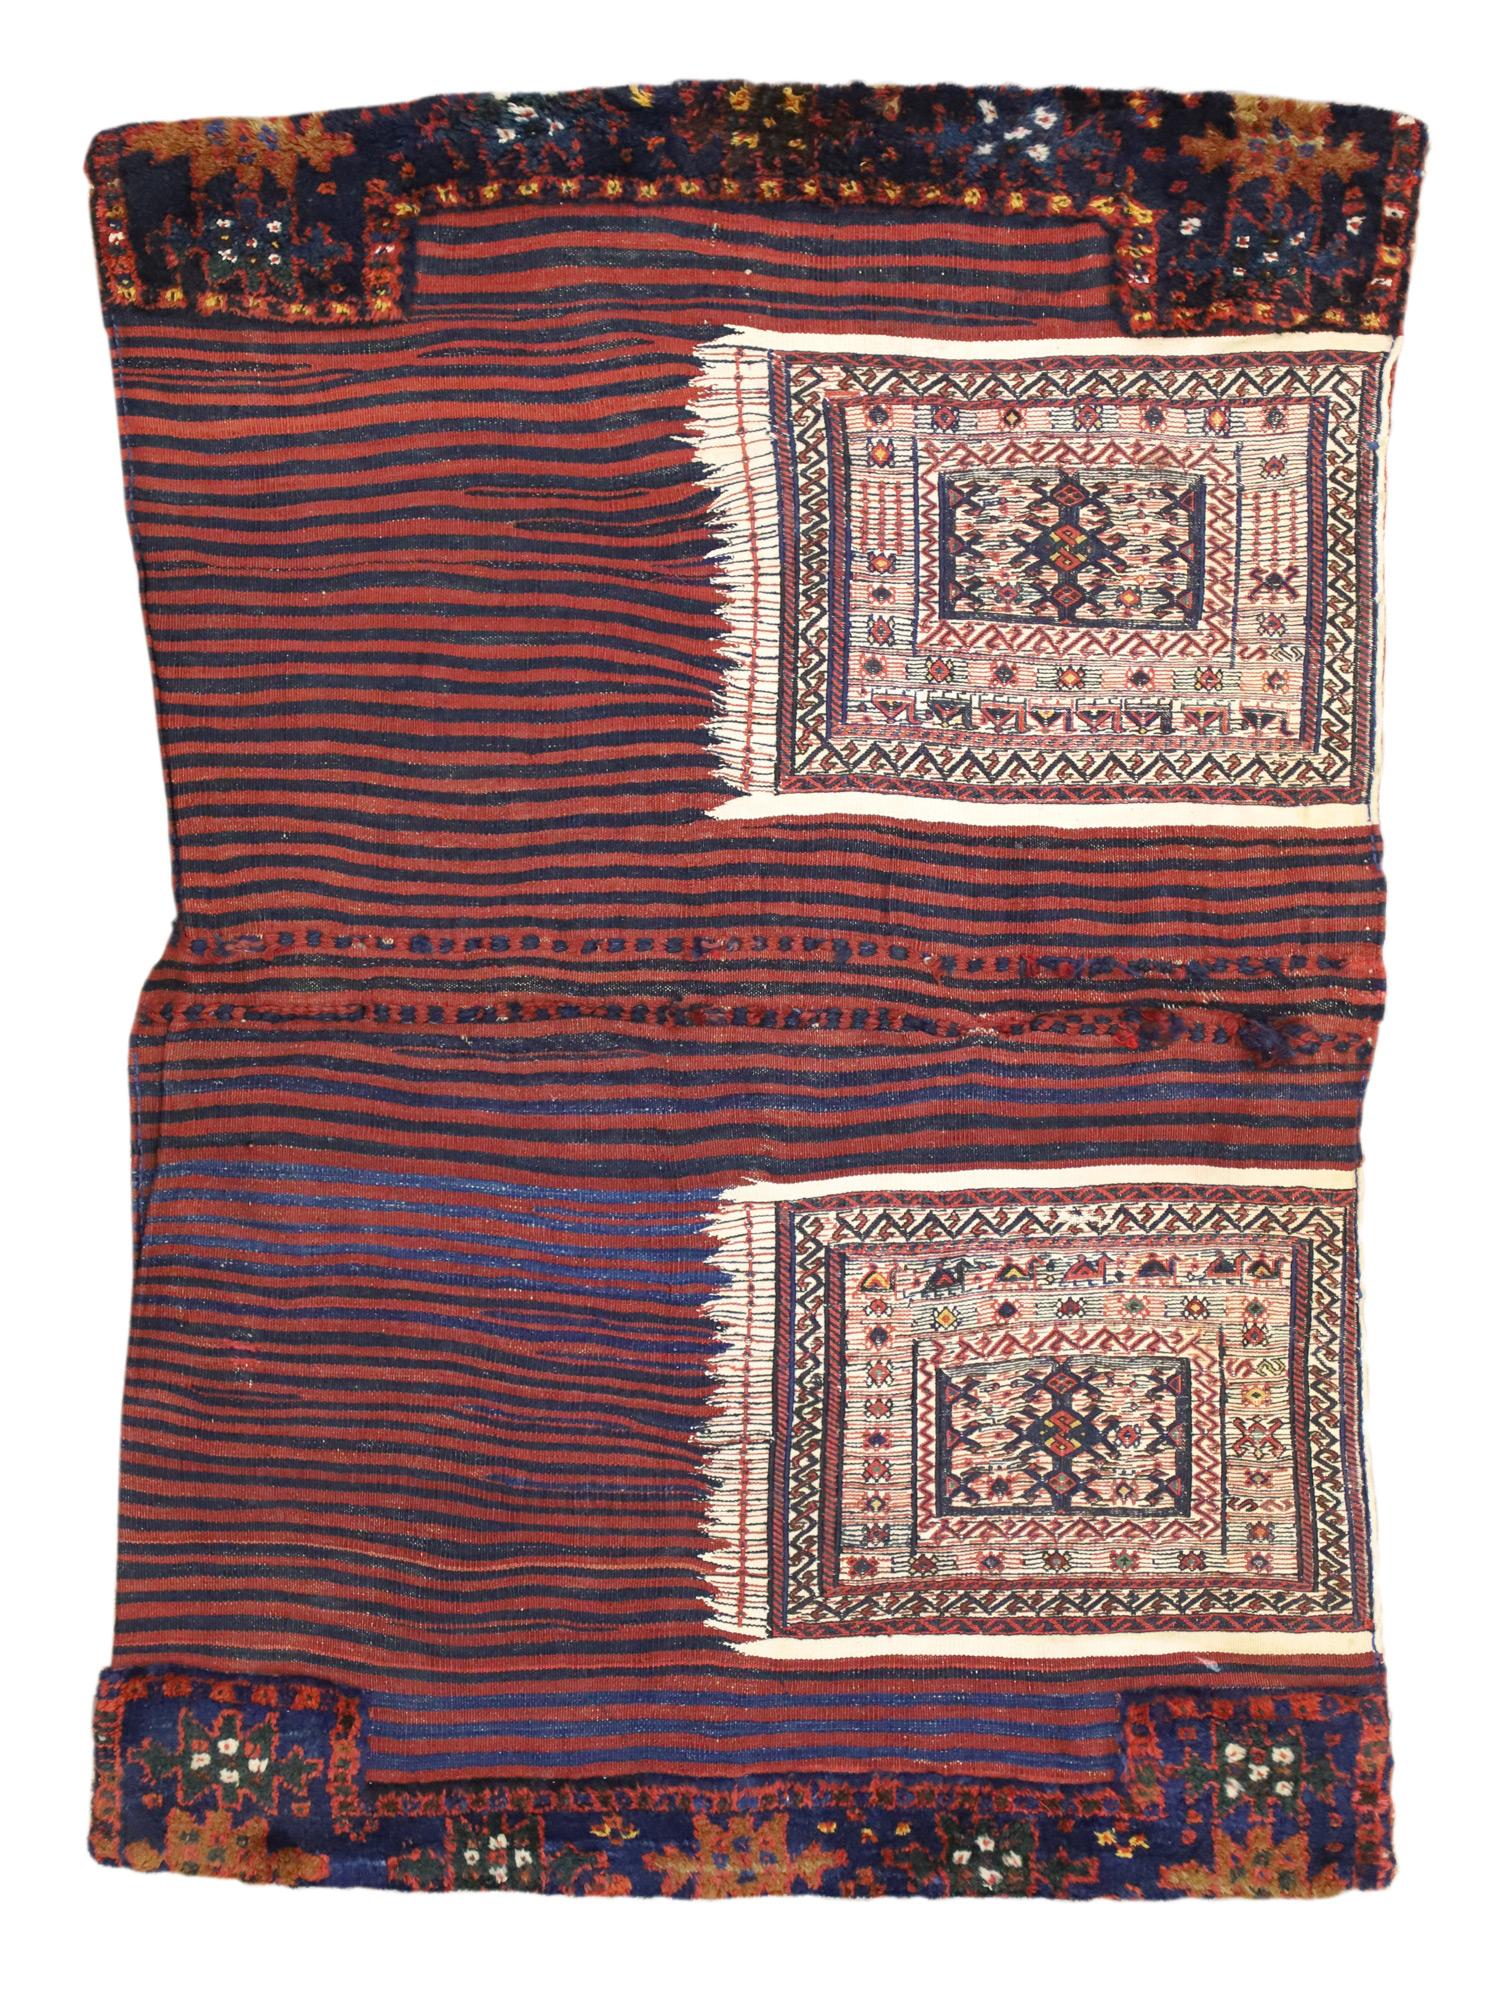 74584 Ancienne sacoche persane Soumak, 03'05 x 05'02. 
Emanant d'un charme nomade avec des détails et une texture incroyables, cette sacoche Soumak persane antique en laine nouée à la main est une vision captivante de la beauté tissée. Il est orné